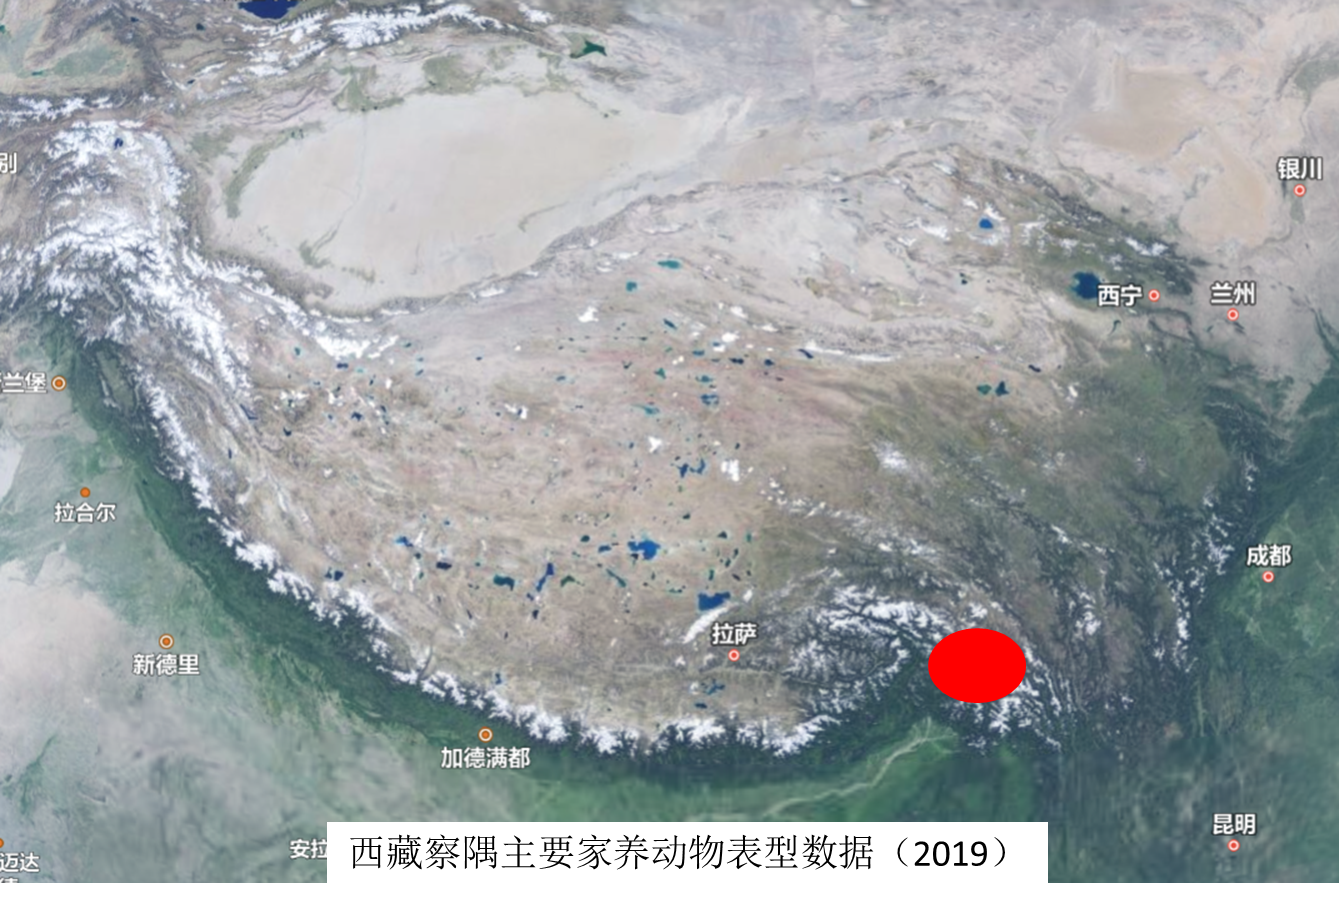 Phenotypic data of main domestic animals - Chayu, Tibet (2019)